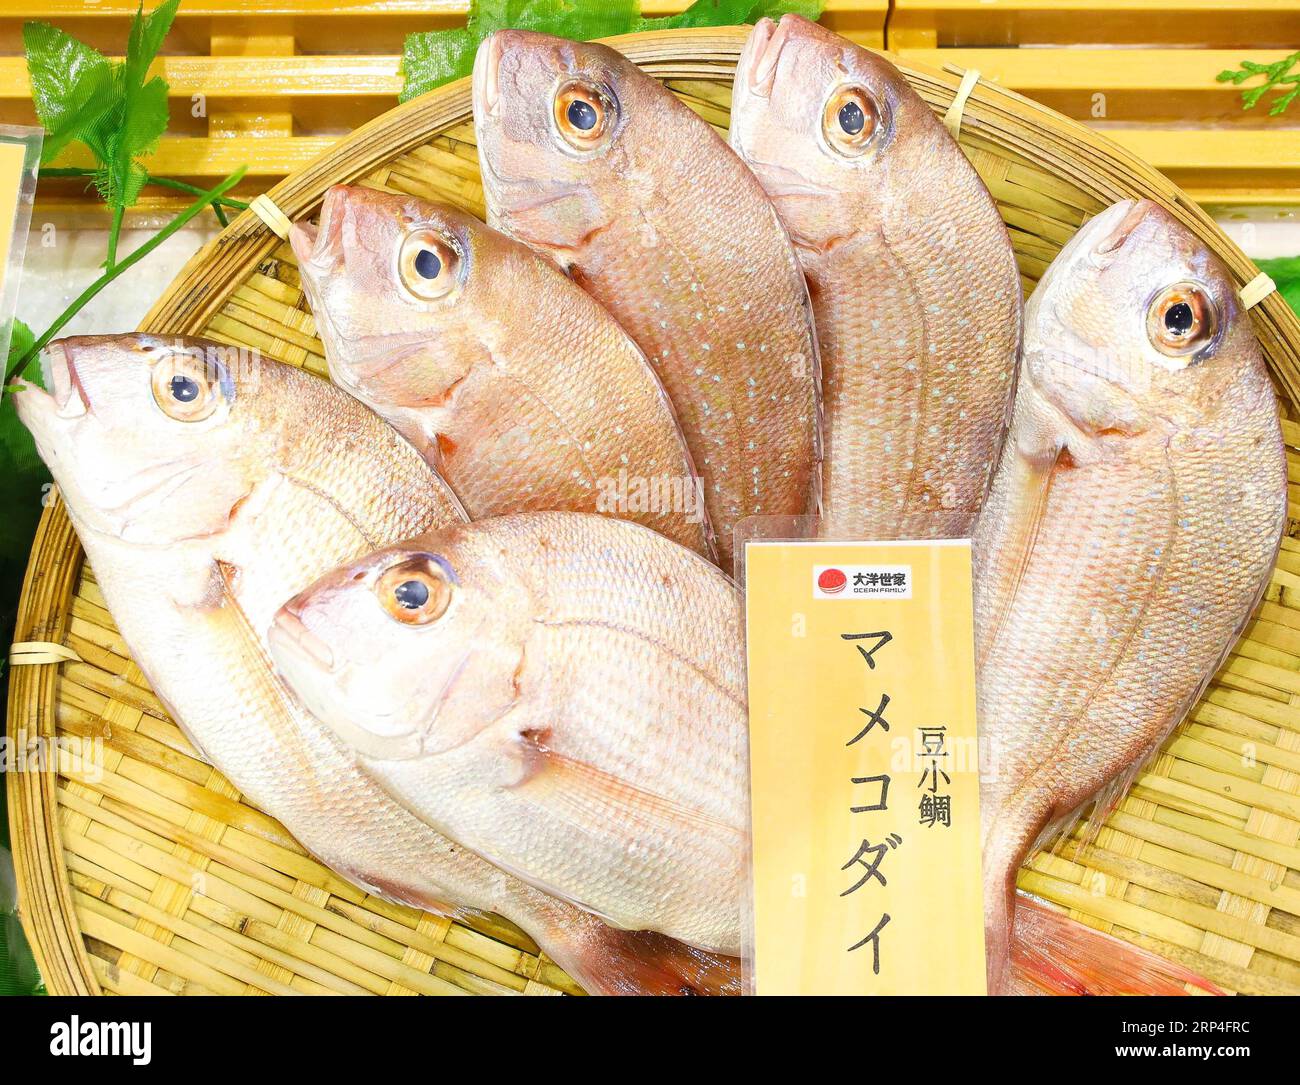 (181107) -- SHANGHAI, 7 novembre 2018 -- une photo prise le 7 novembre 2018 montre des fruits de mer du Japon dans la zone Food & Agricultural Products lors de la première China International Import Expo (CIIE) à Shanghai, dans l'est de la Chine. Divers aliments du monde entier sont exposés au CIIE. )(zyd) (IMPORT EXPO)CHINA-SHANGHAI-CIIE-FOOD (CN) LiuxDawei PUBLICATIONxNOTxINxCHN Banque D'Images